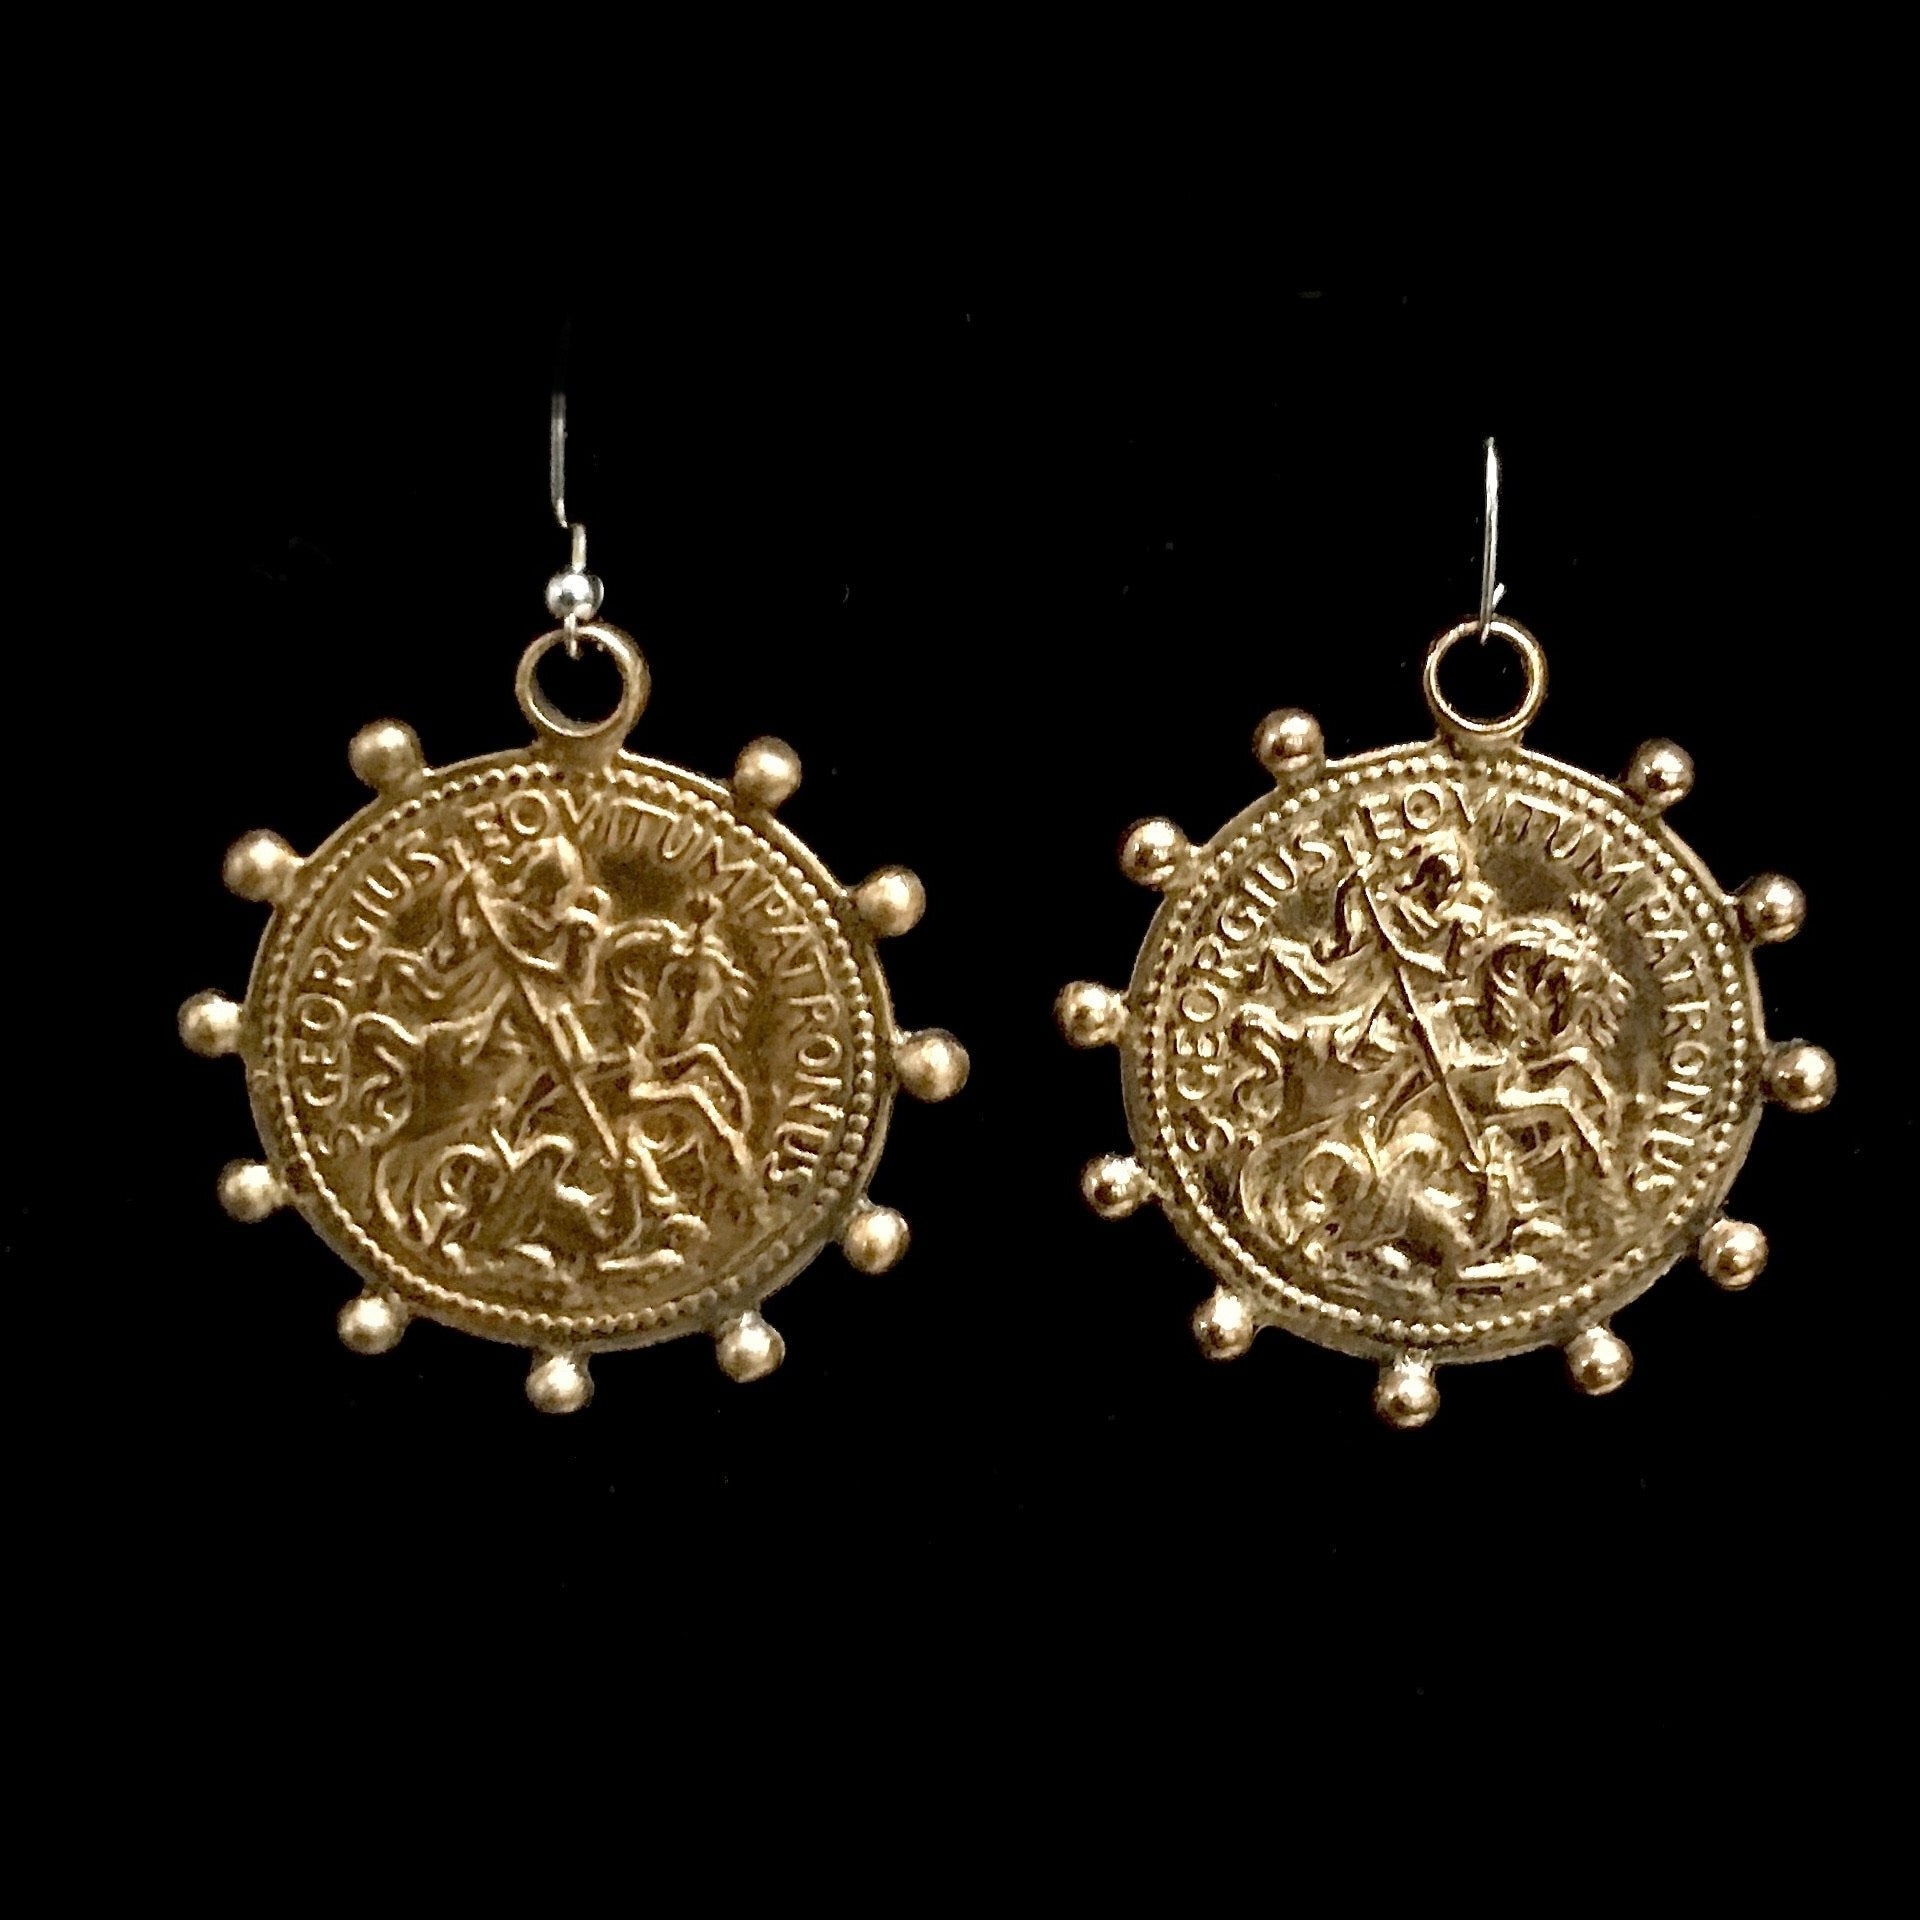 Saint George Medallion Earrings  by Whispering Goddess - Gold